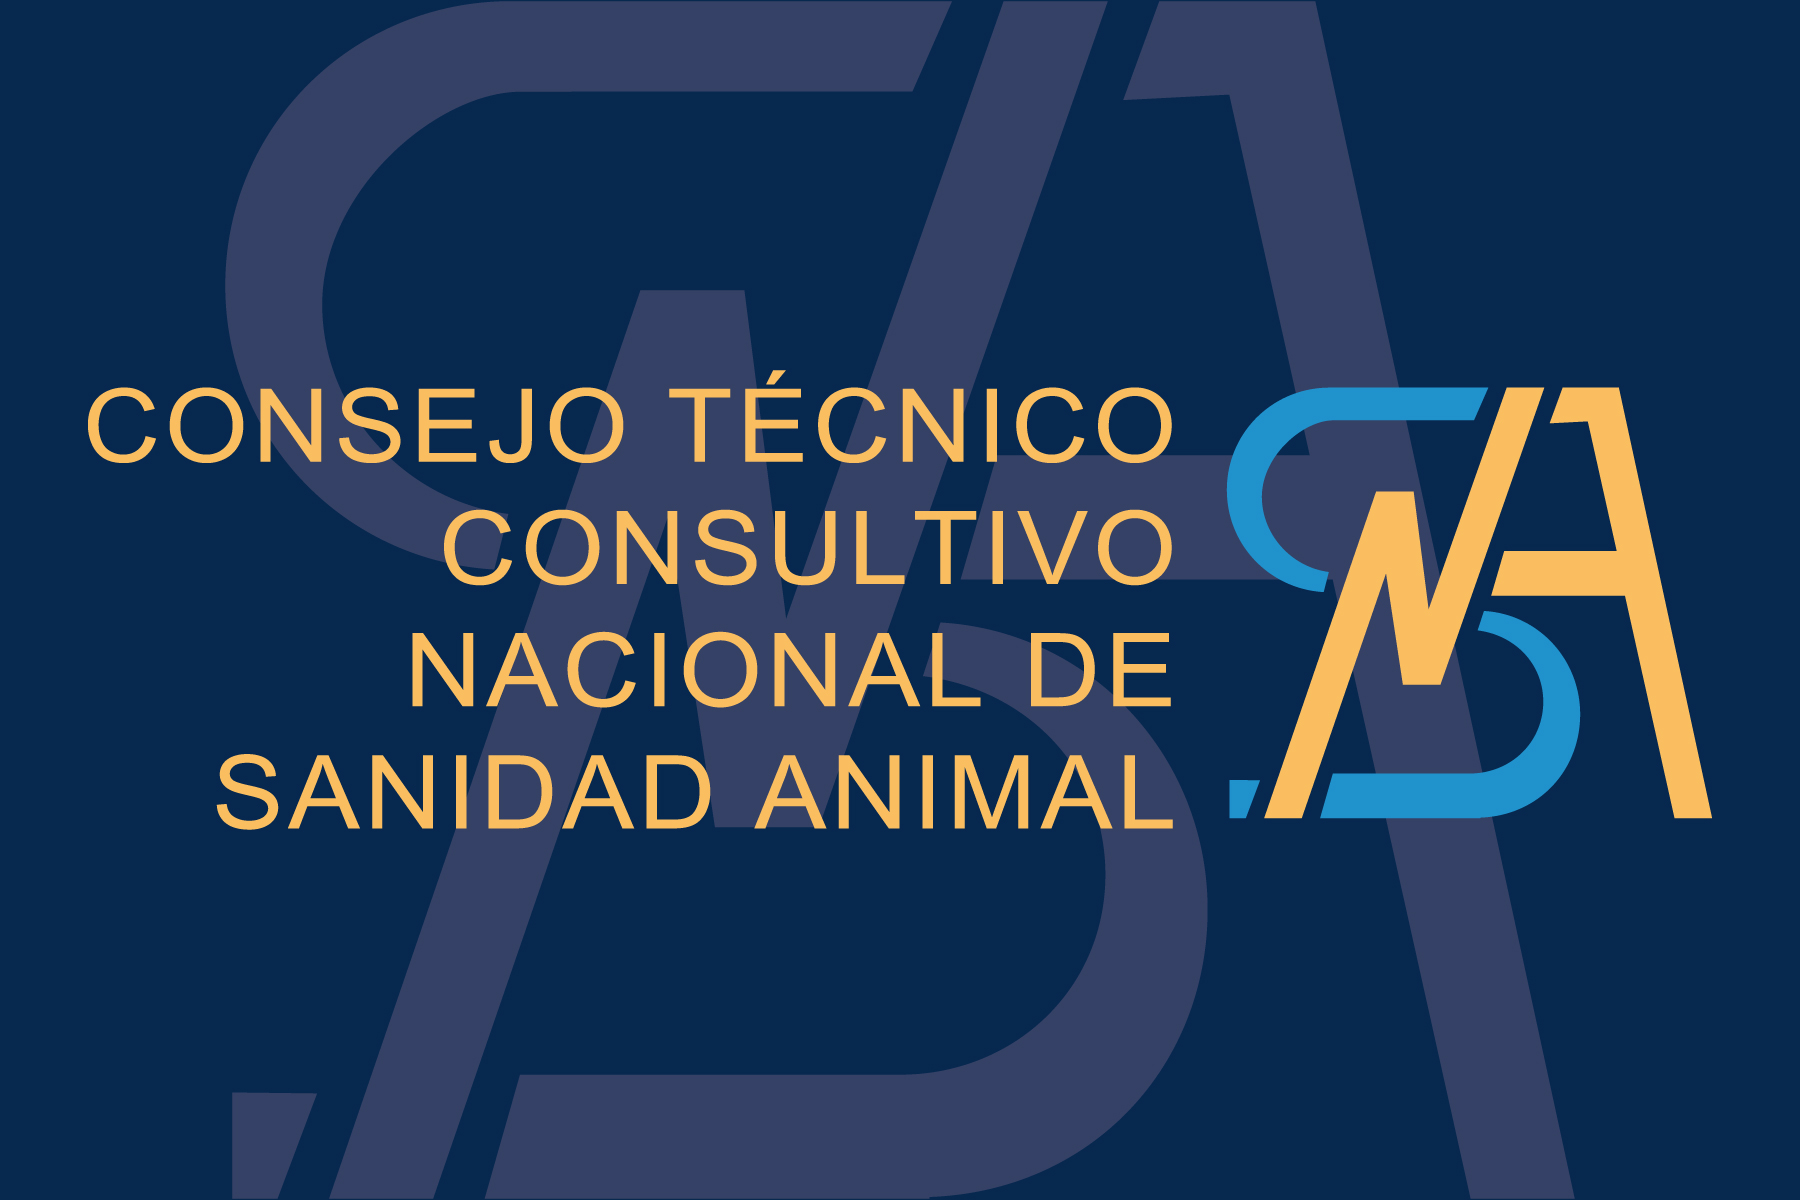 Foro de participación entre especialistas de reconocido prestigio en el campo de la sanidad y producción animal.